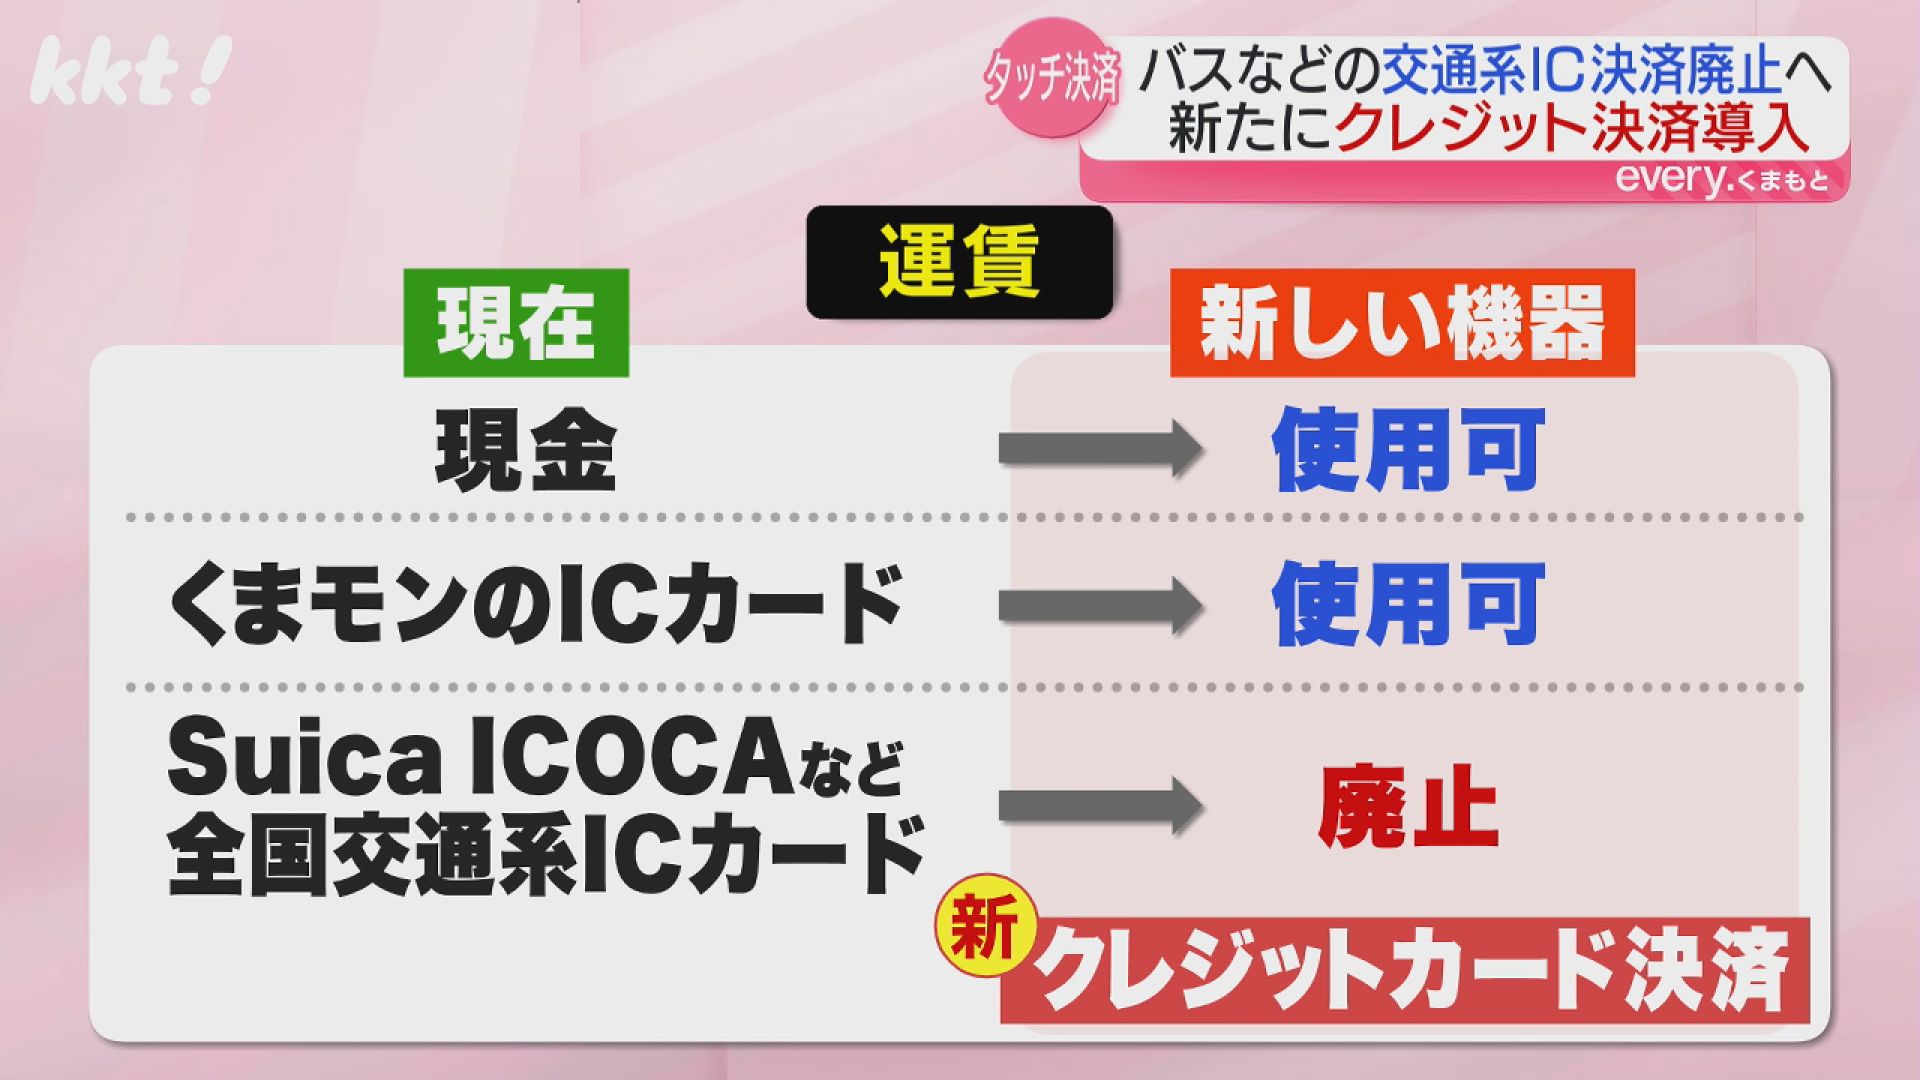 なぜ?】Suicaなどの交通系ICカード決済 熊本のバスや市電で廃止へ｜KKT NEWS NNN